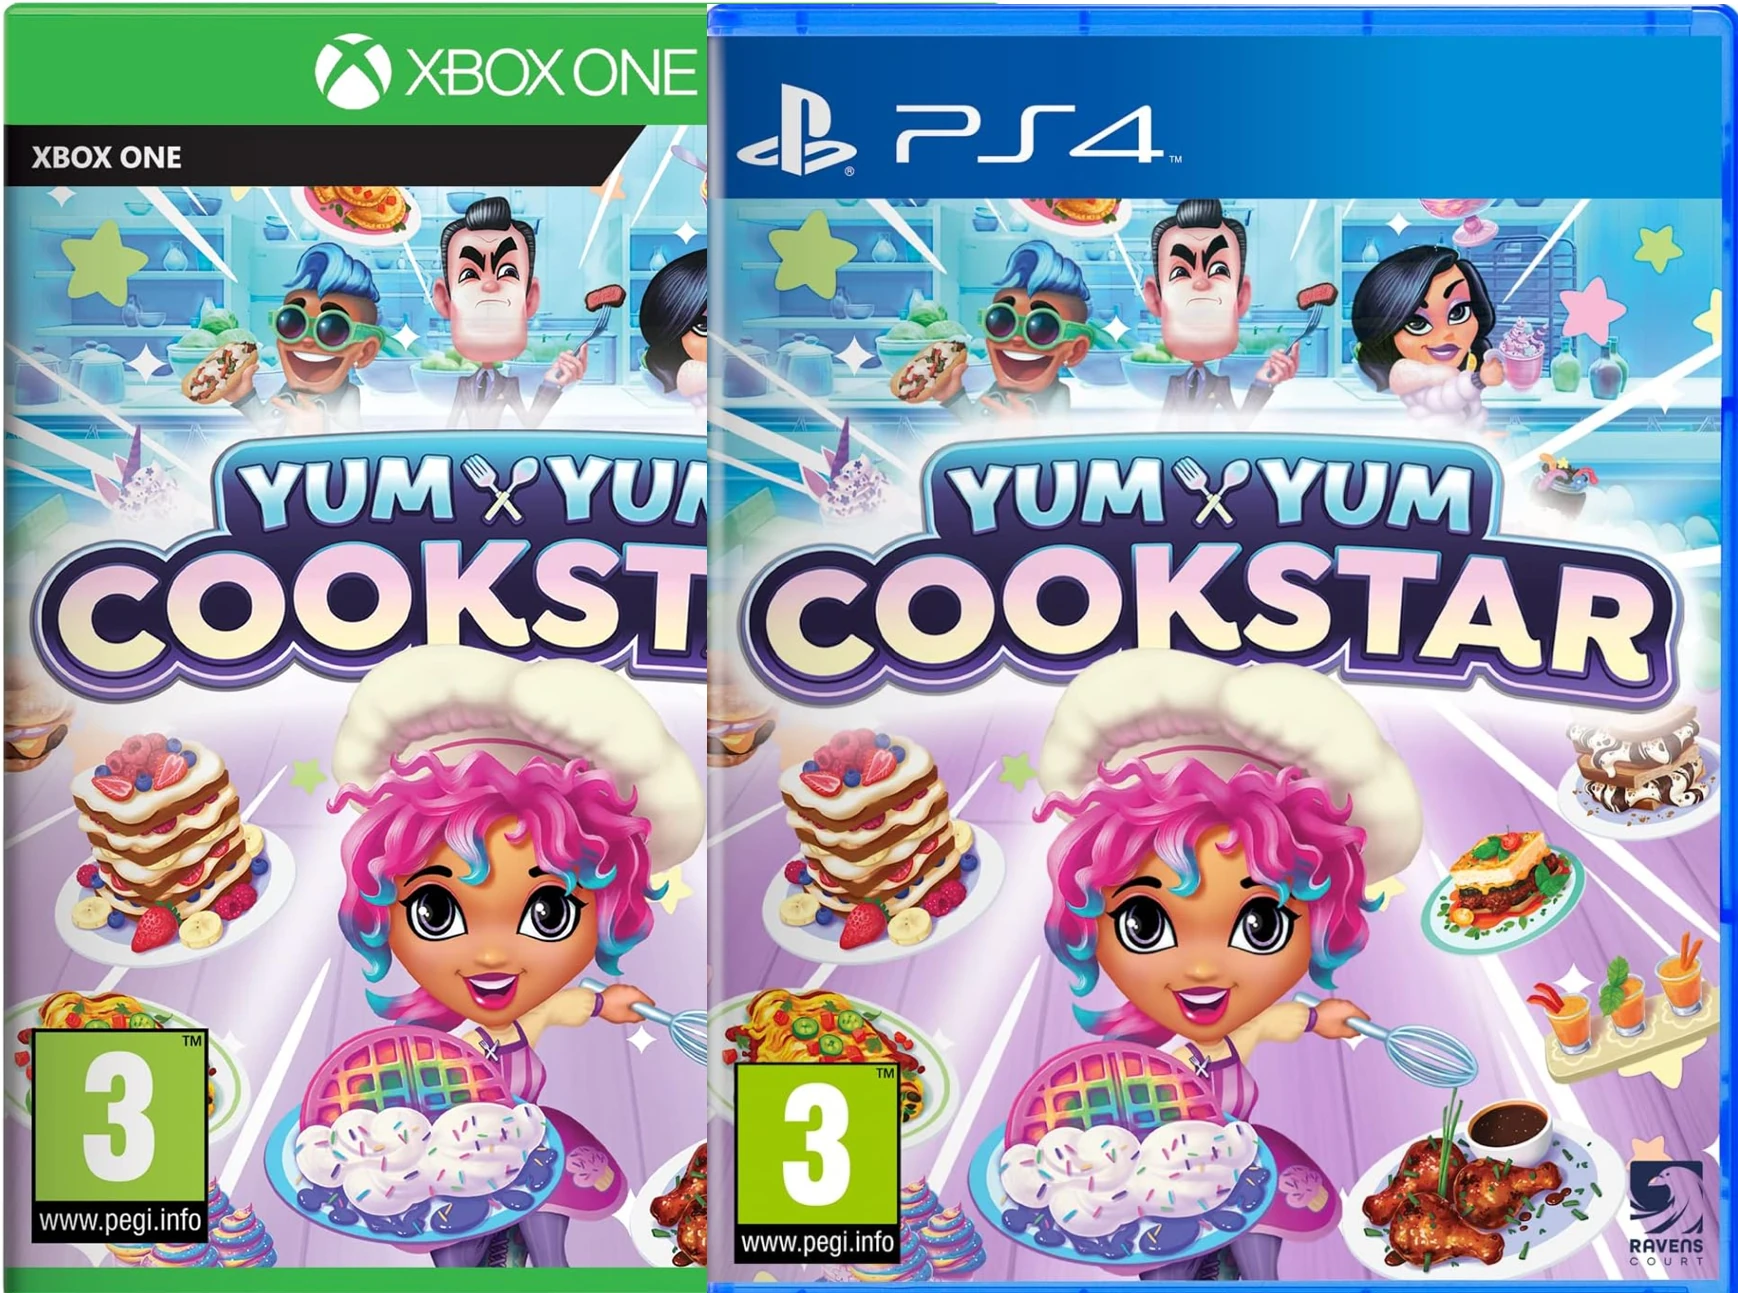 Yum Yum : Cookstar